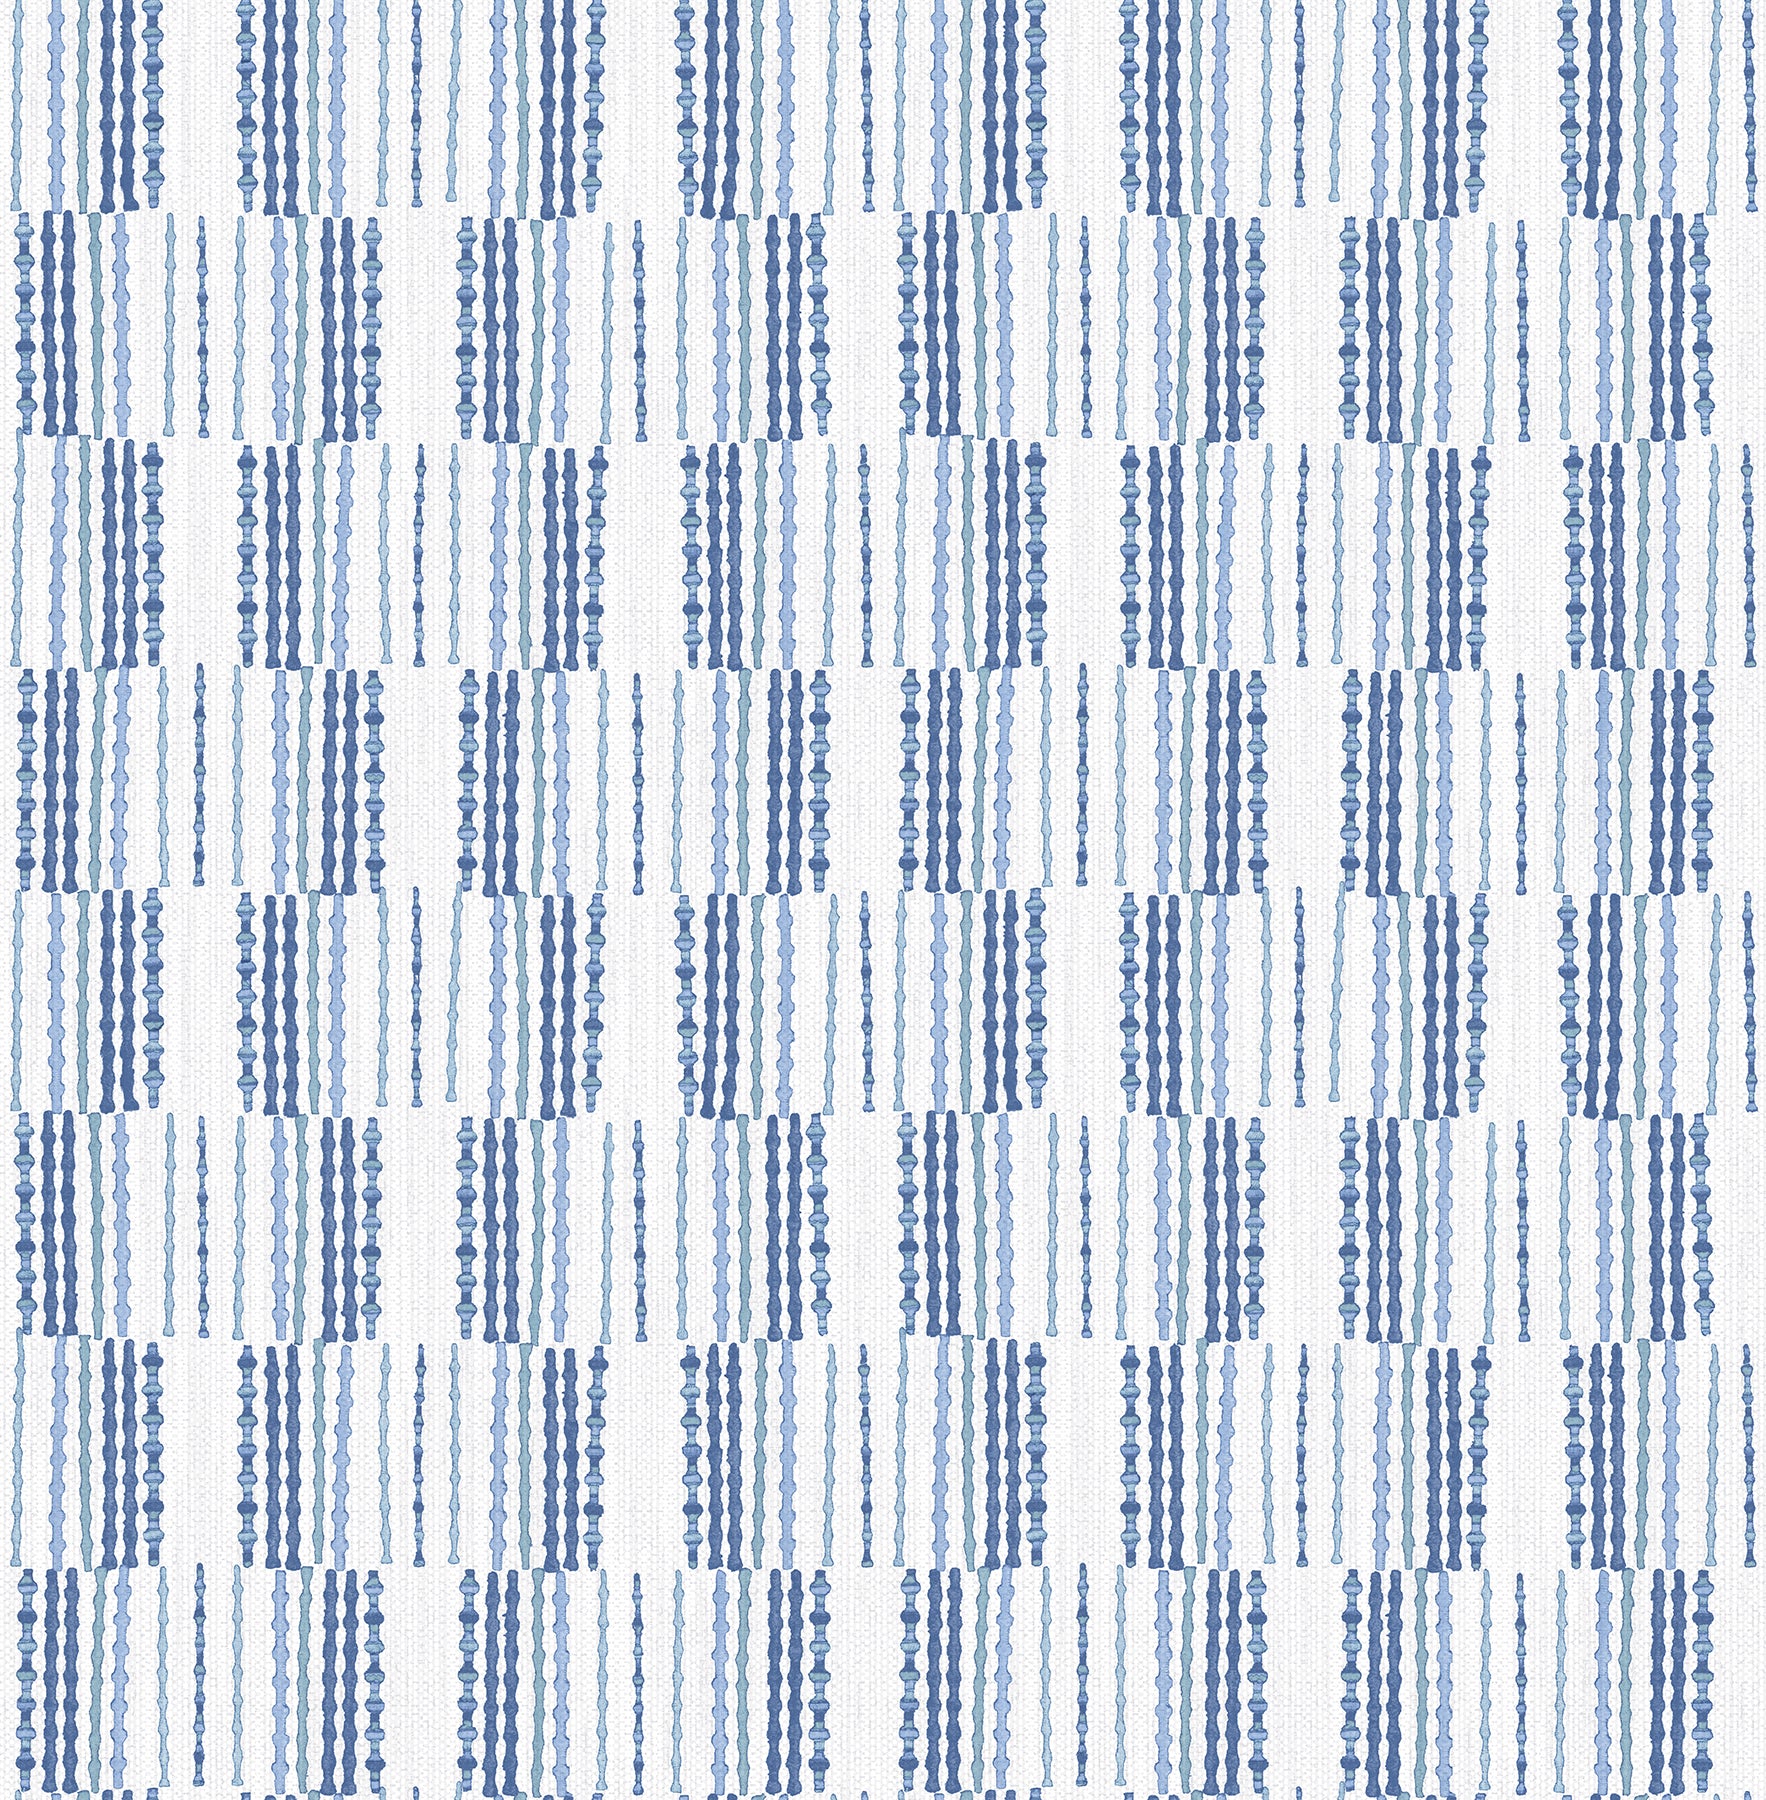 View 2903-25806 Blue Bell Burgen Blue Geometric Linen A Street Prints Wallpaper